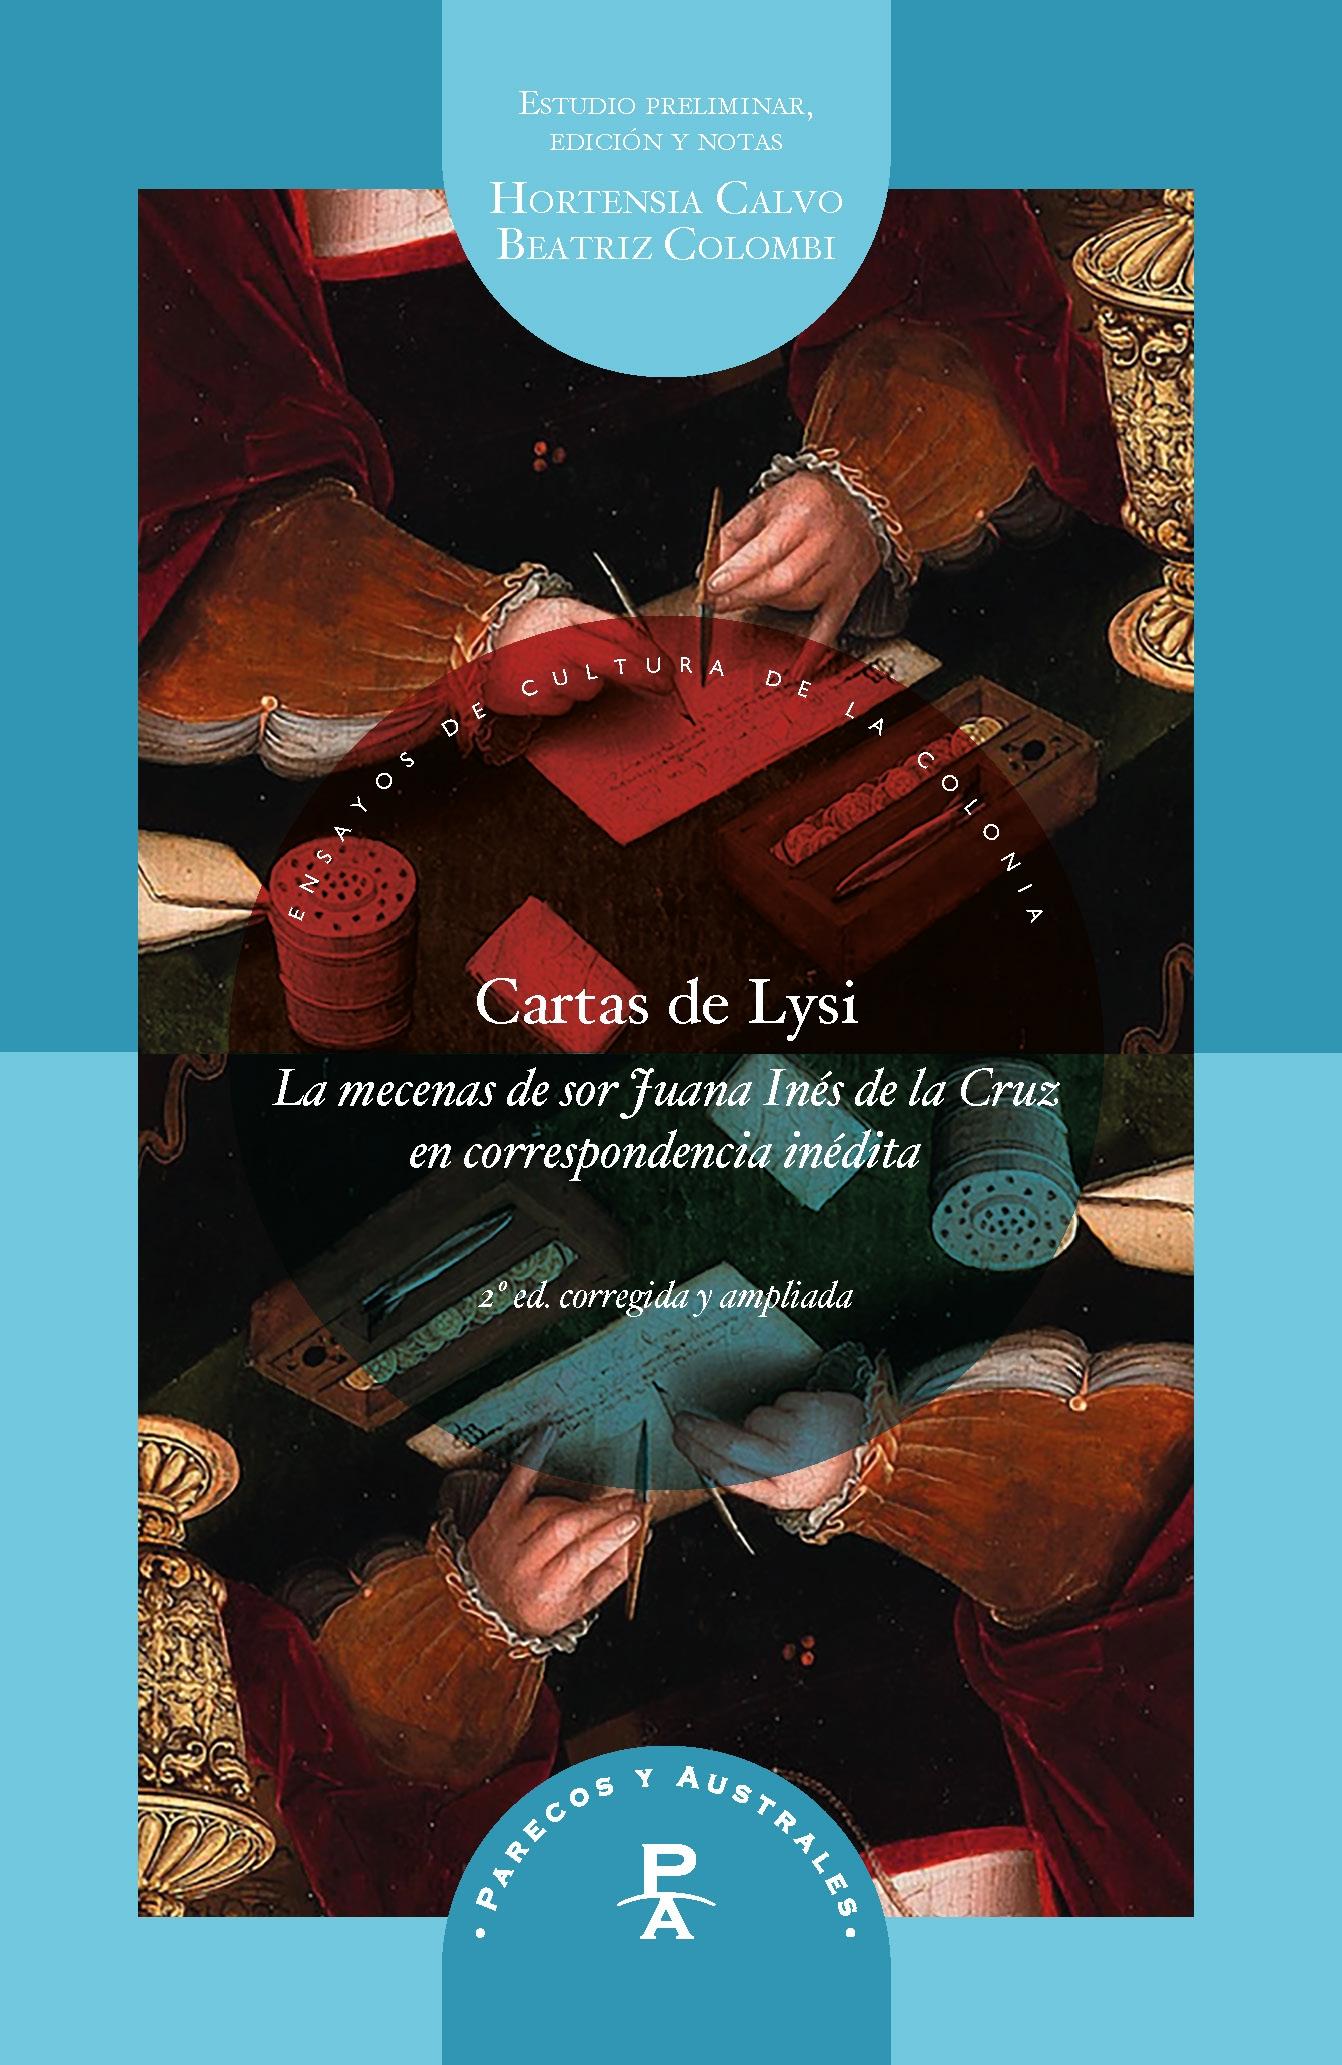 CARTAS DE LYSI "la mecenas de sor Juana Inés de la Cruz en correspondencia inédita"